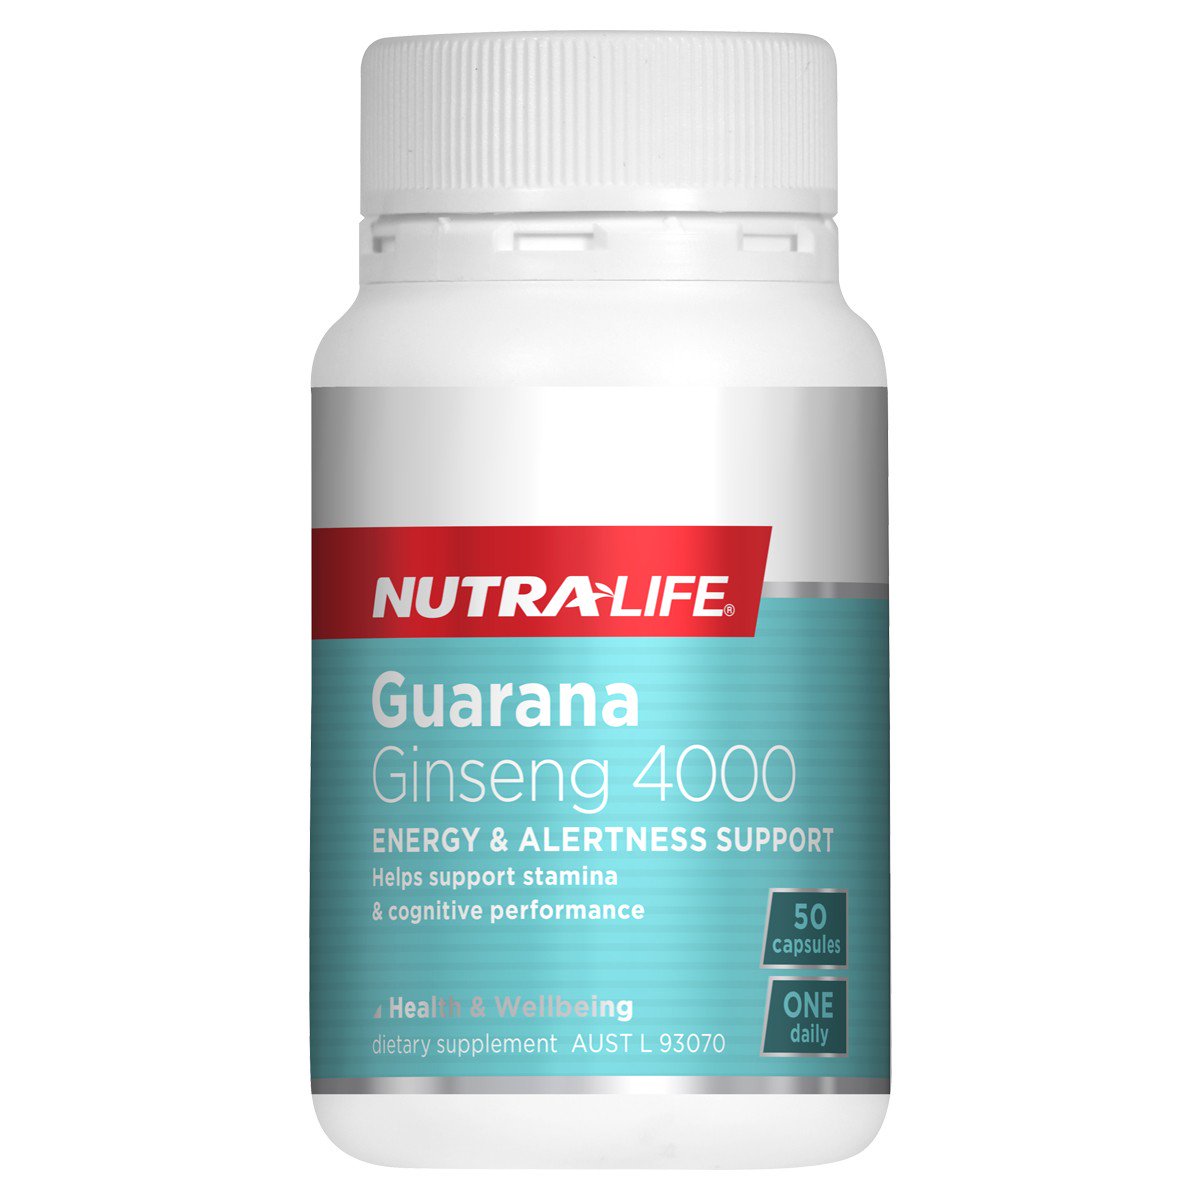 Nutra-Life Guarana Ginseng 4000 